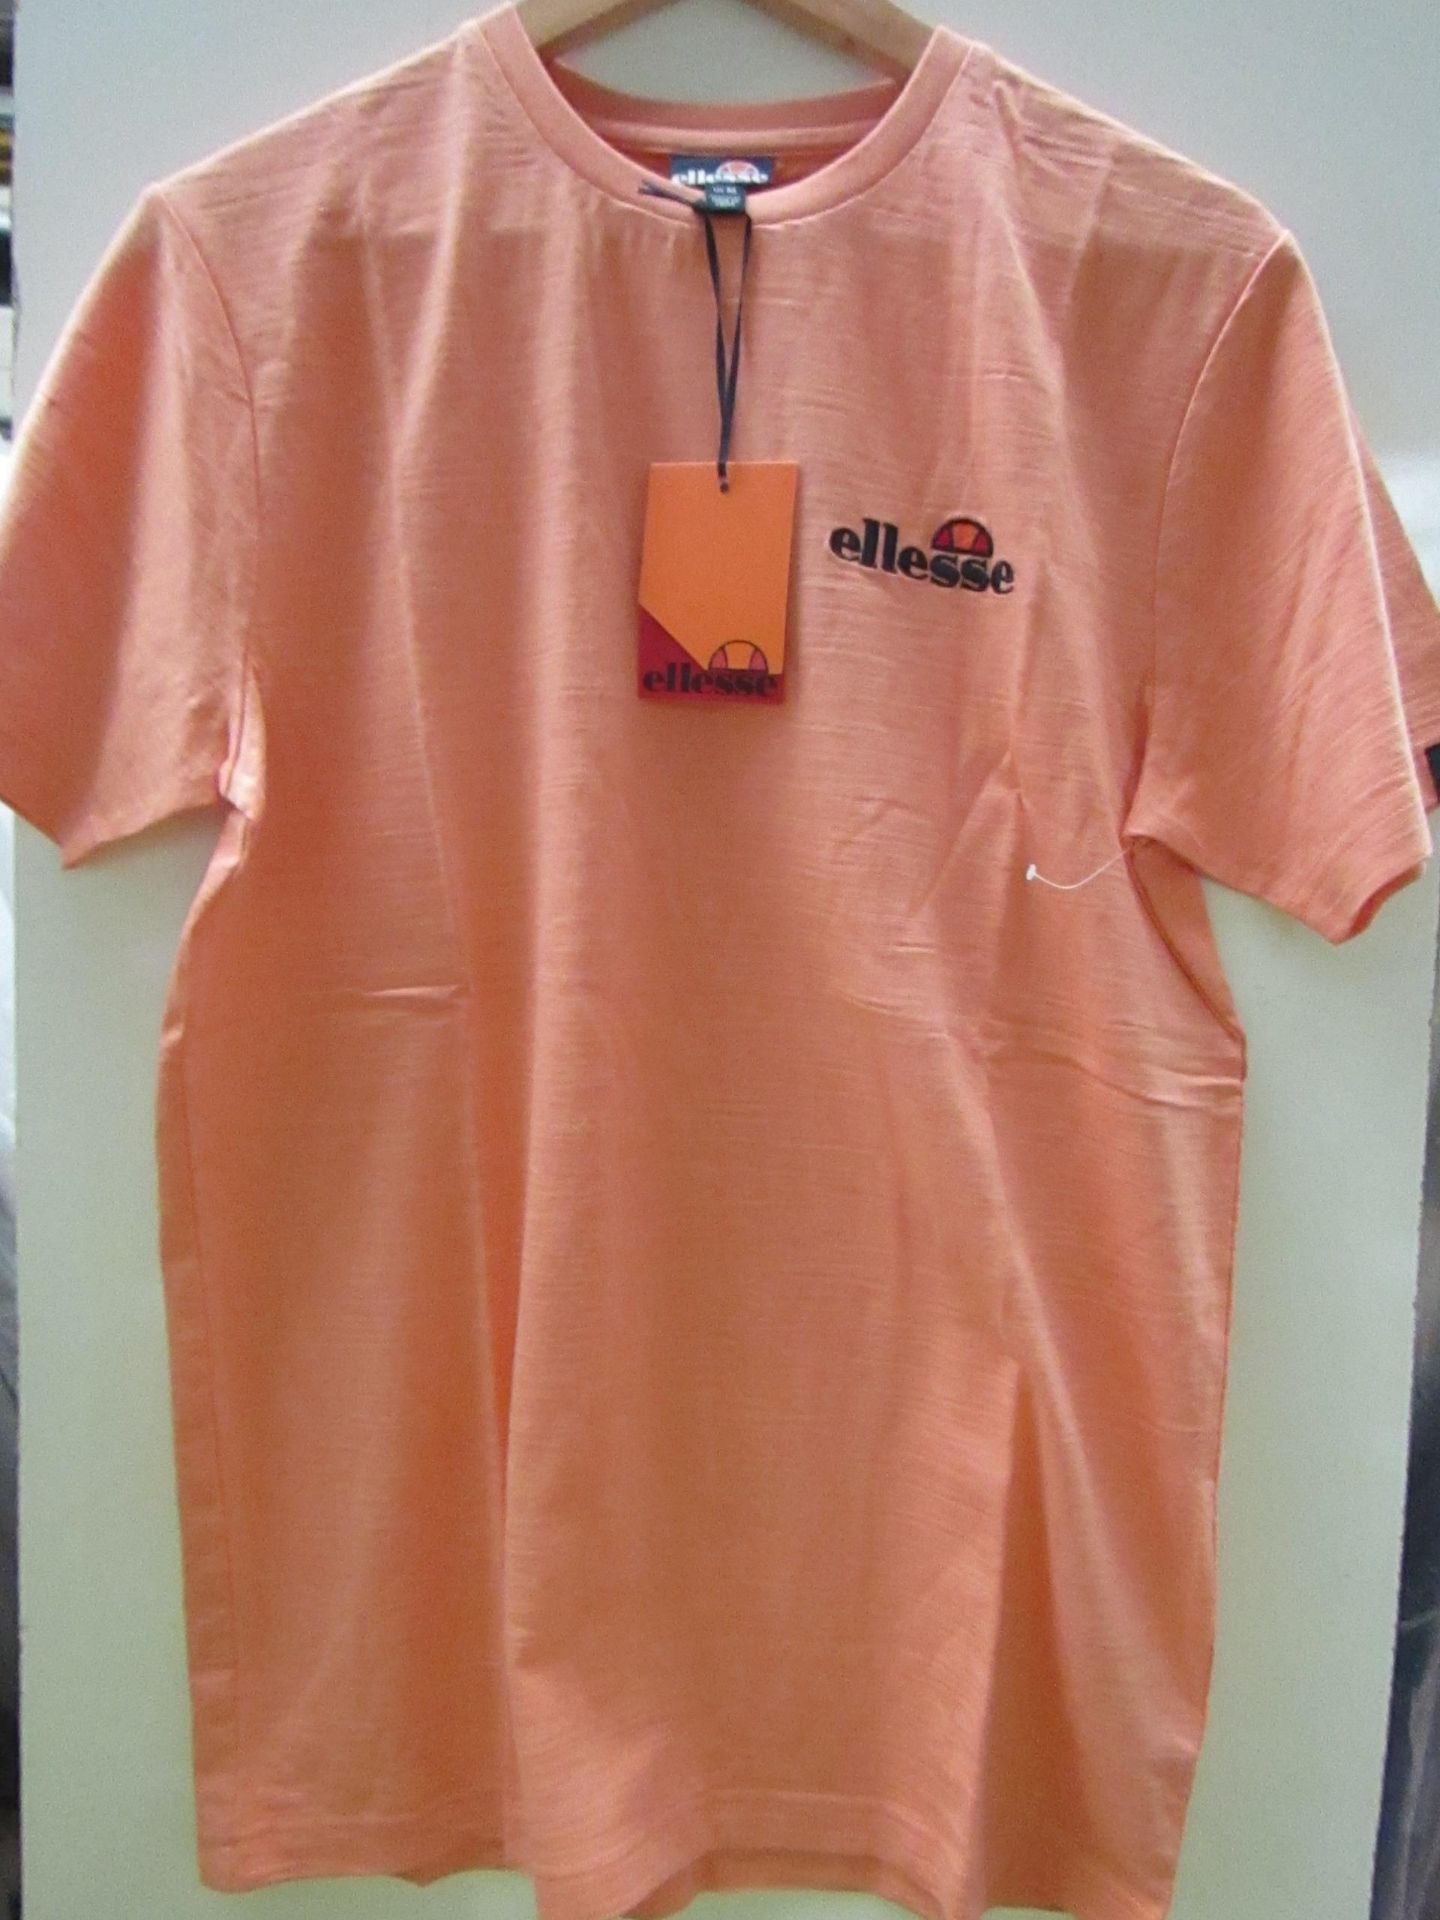 Ellesse T/Shirt Orange Size M New No Tags